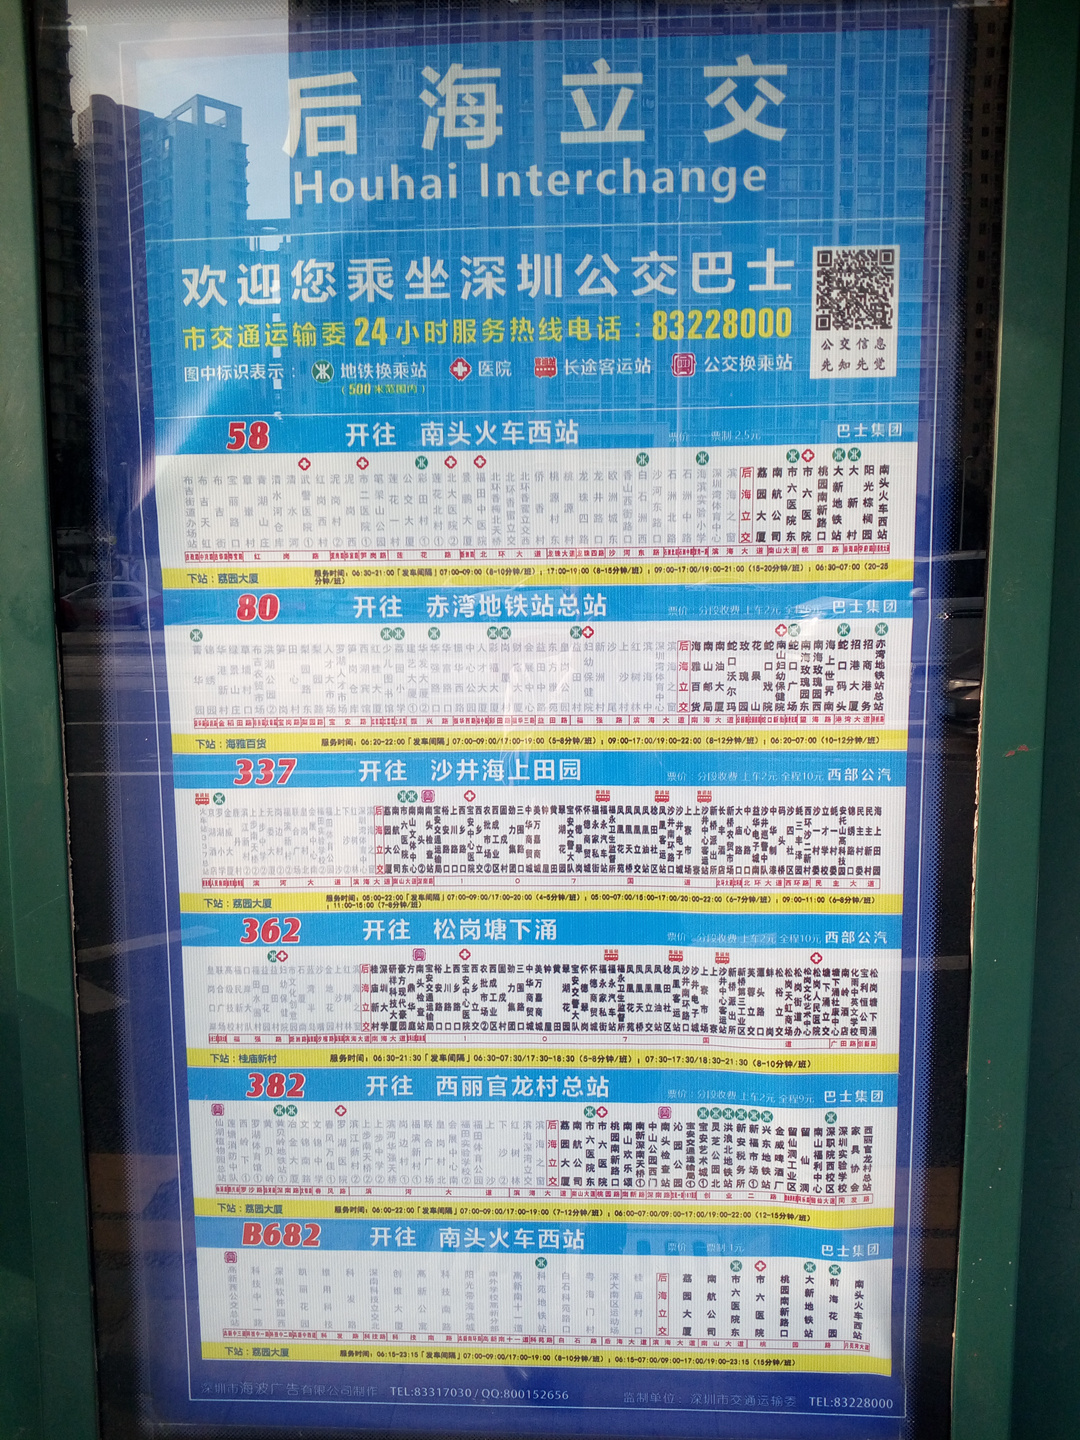 下图为桂庙站公交站站牌照片